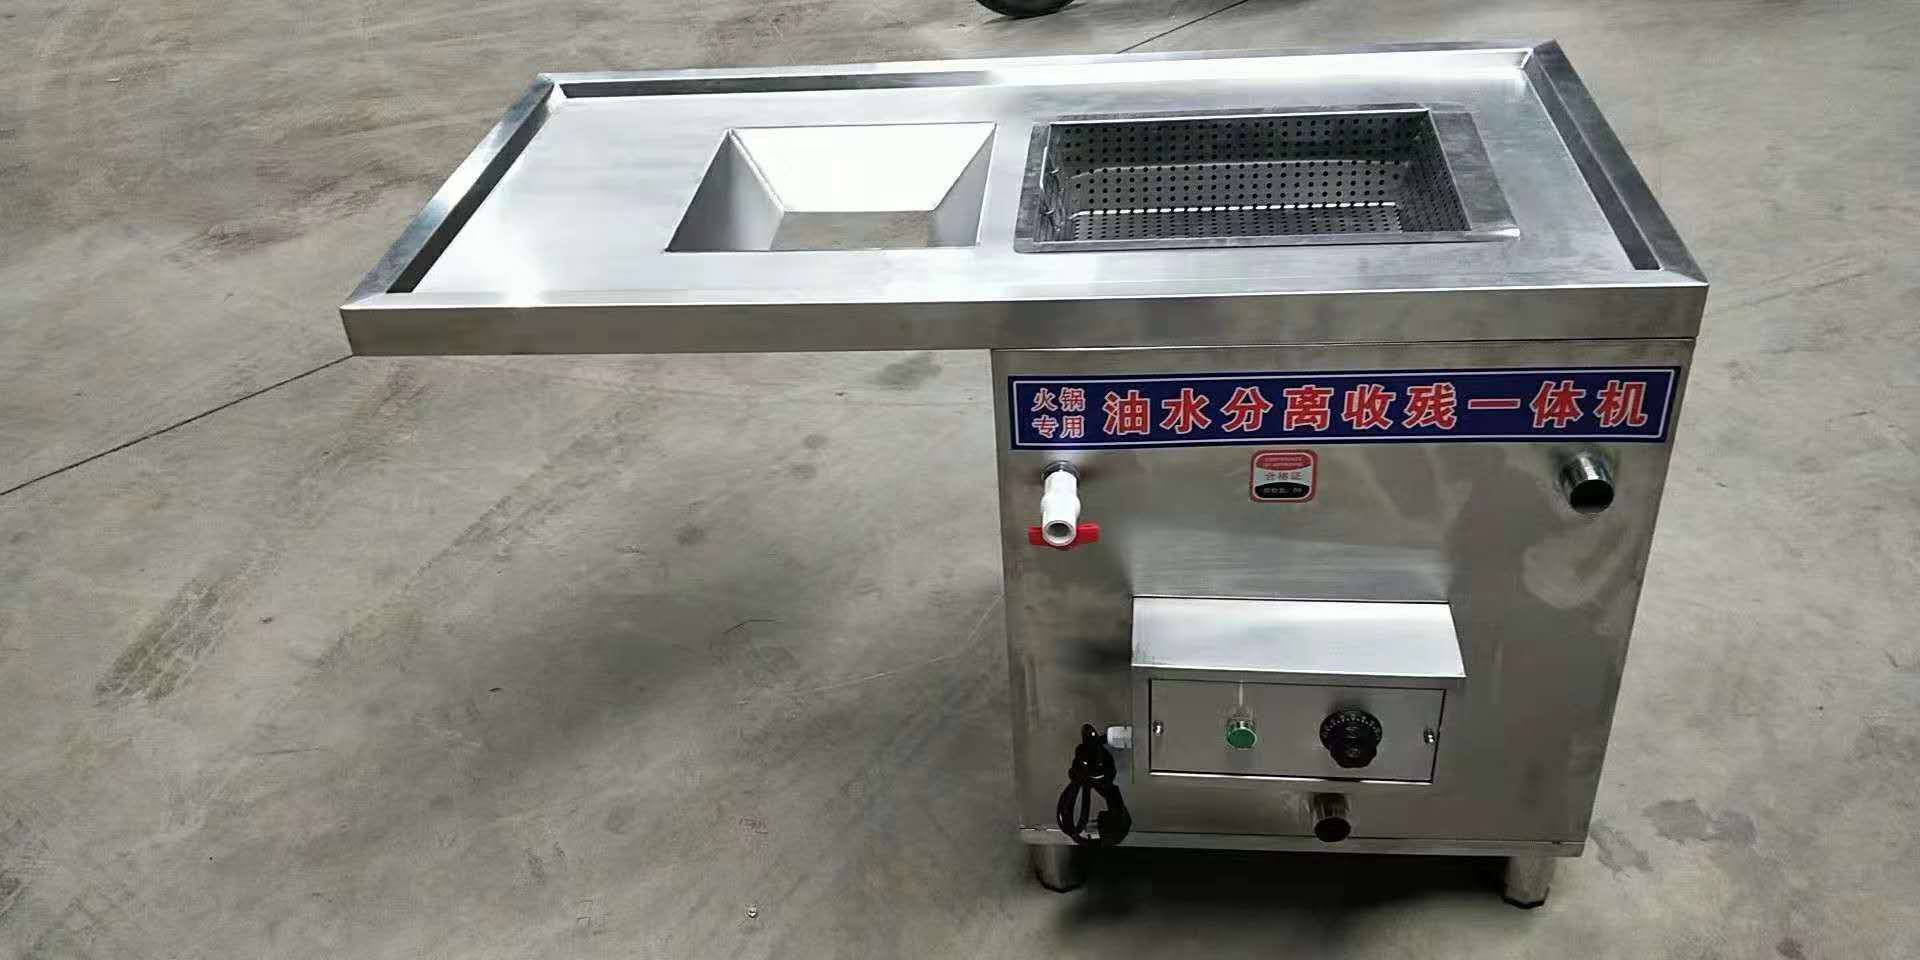 上海市食品安全网公示餐饮用可移动手推型油水分离器